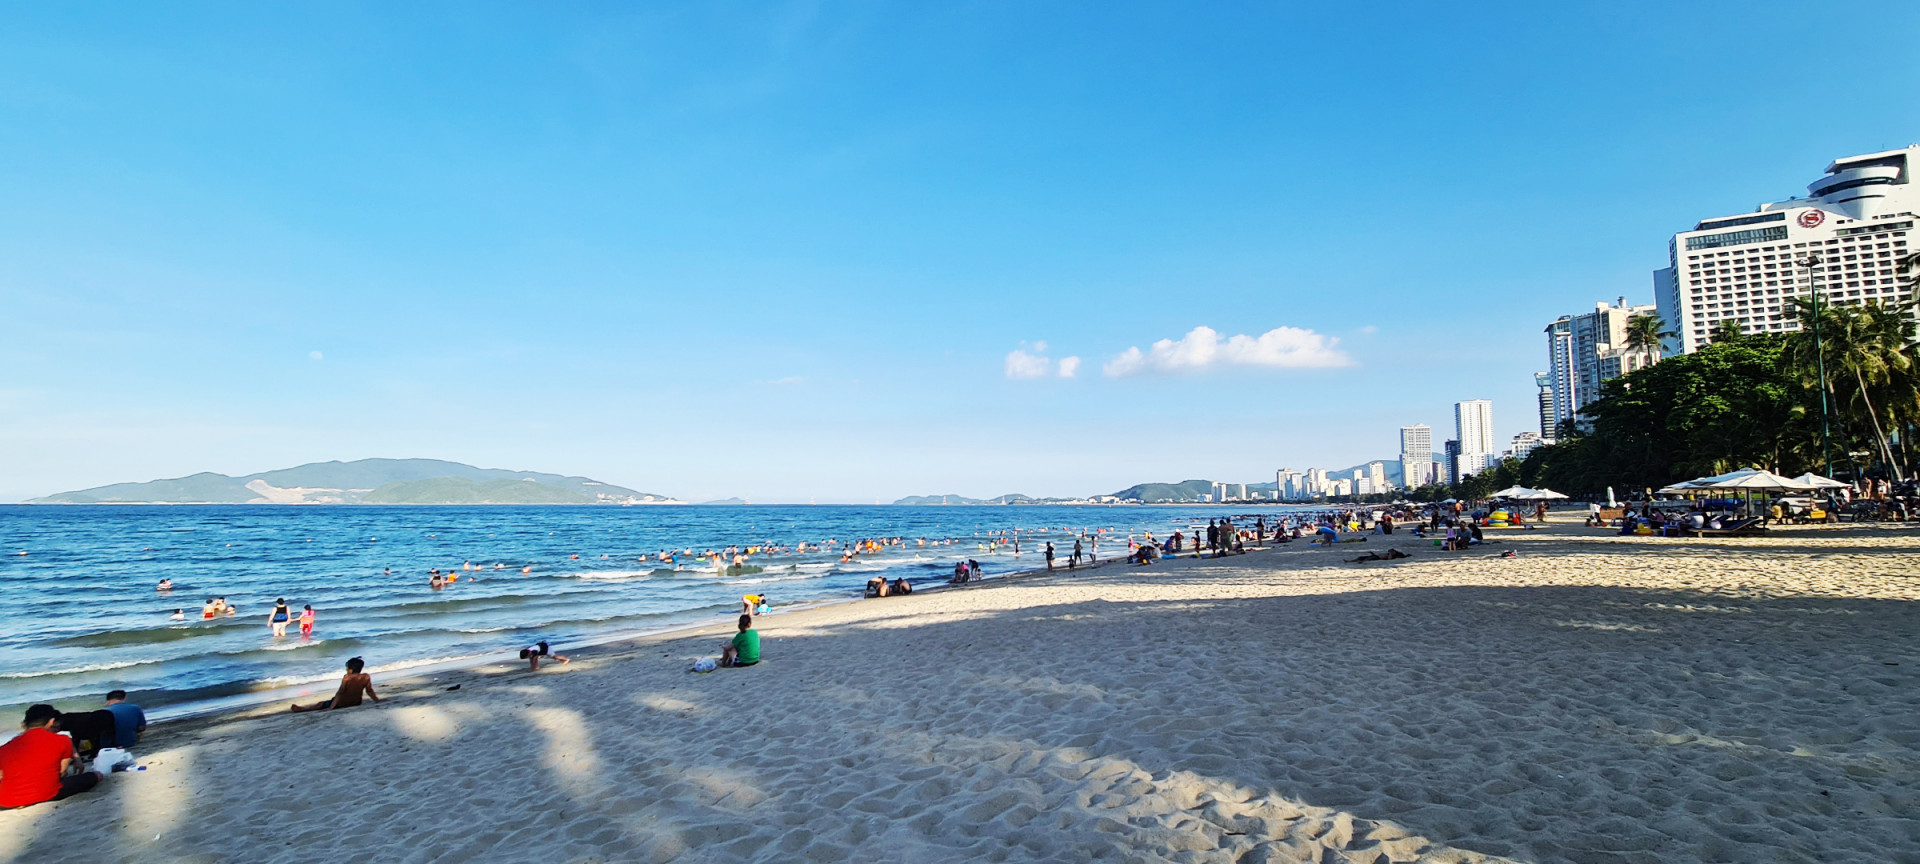 Nha Trang là điểm đến thu hút đông đảo du khách trong và ngoài nước. Ảnh: Hà Mai